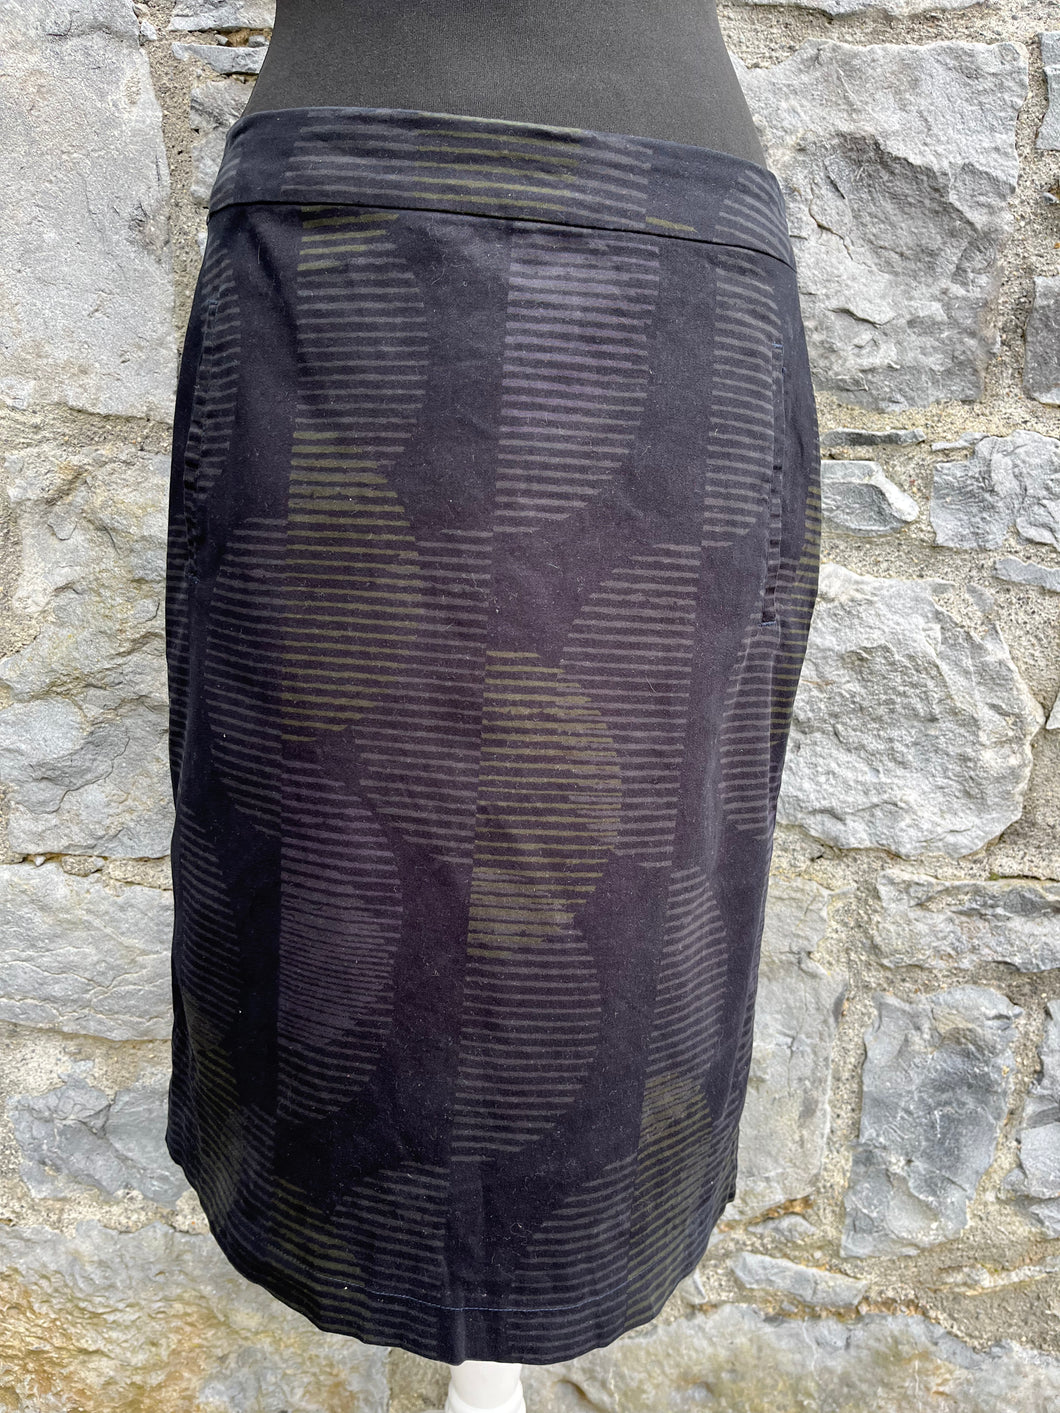 Charcoal stripy skirt uk 10-12